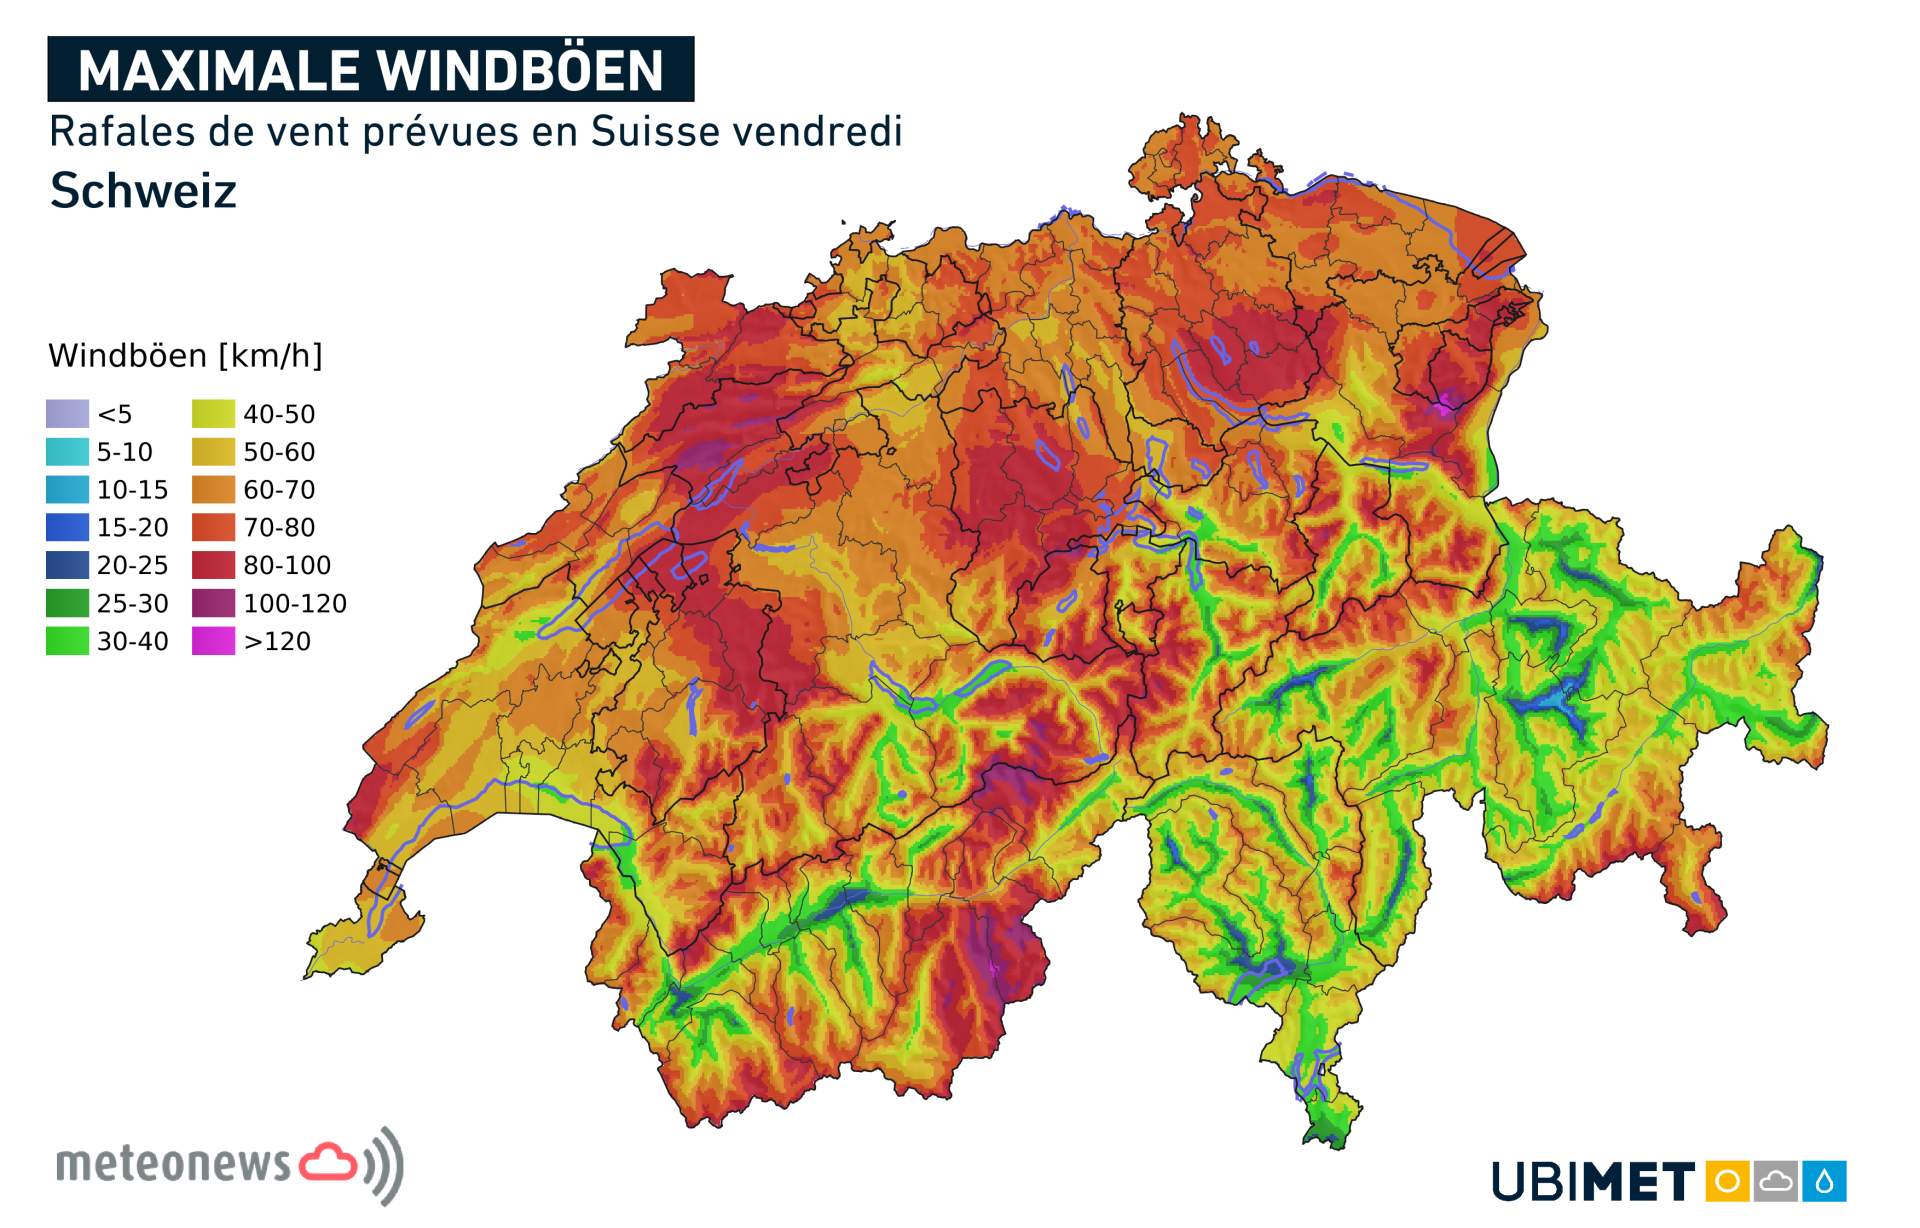 Rafales de vent prévues en Suisse vendredi; Source: MeteoNews